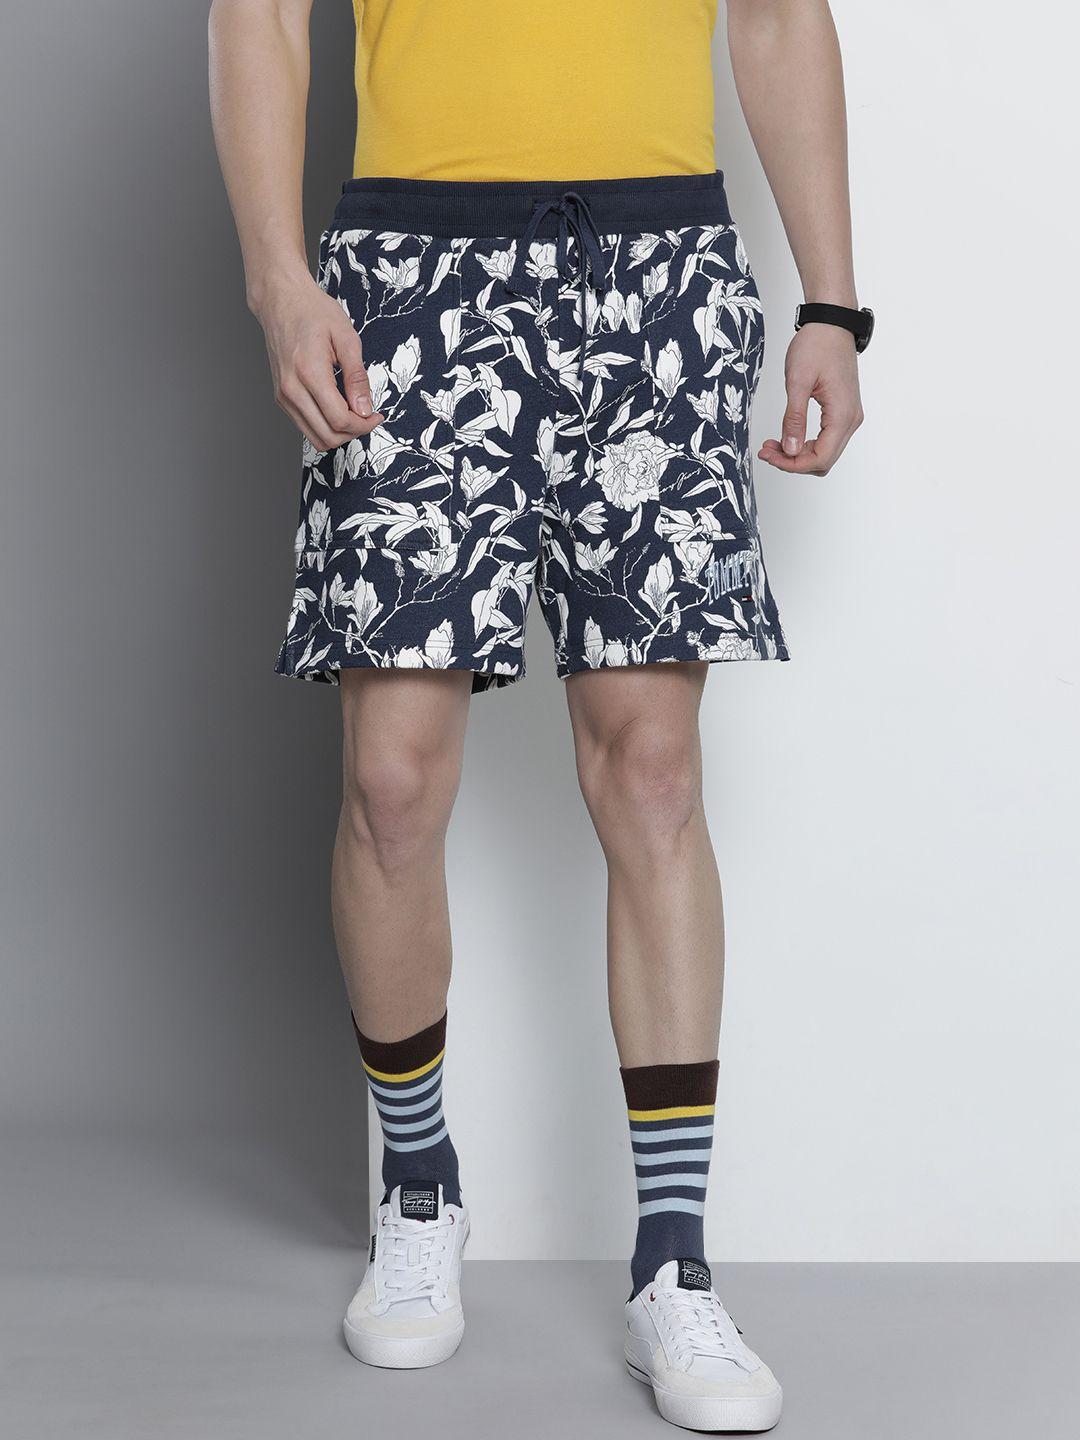 tommy hilfiger men navy blue floral printed casual regular shorts